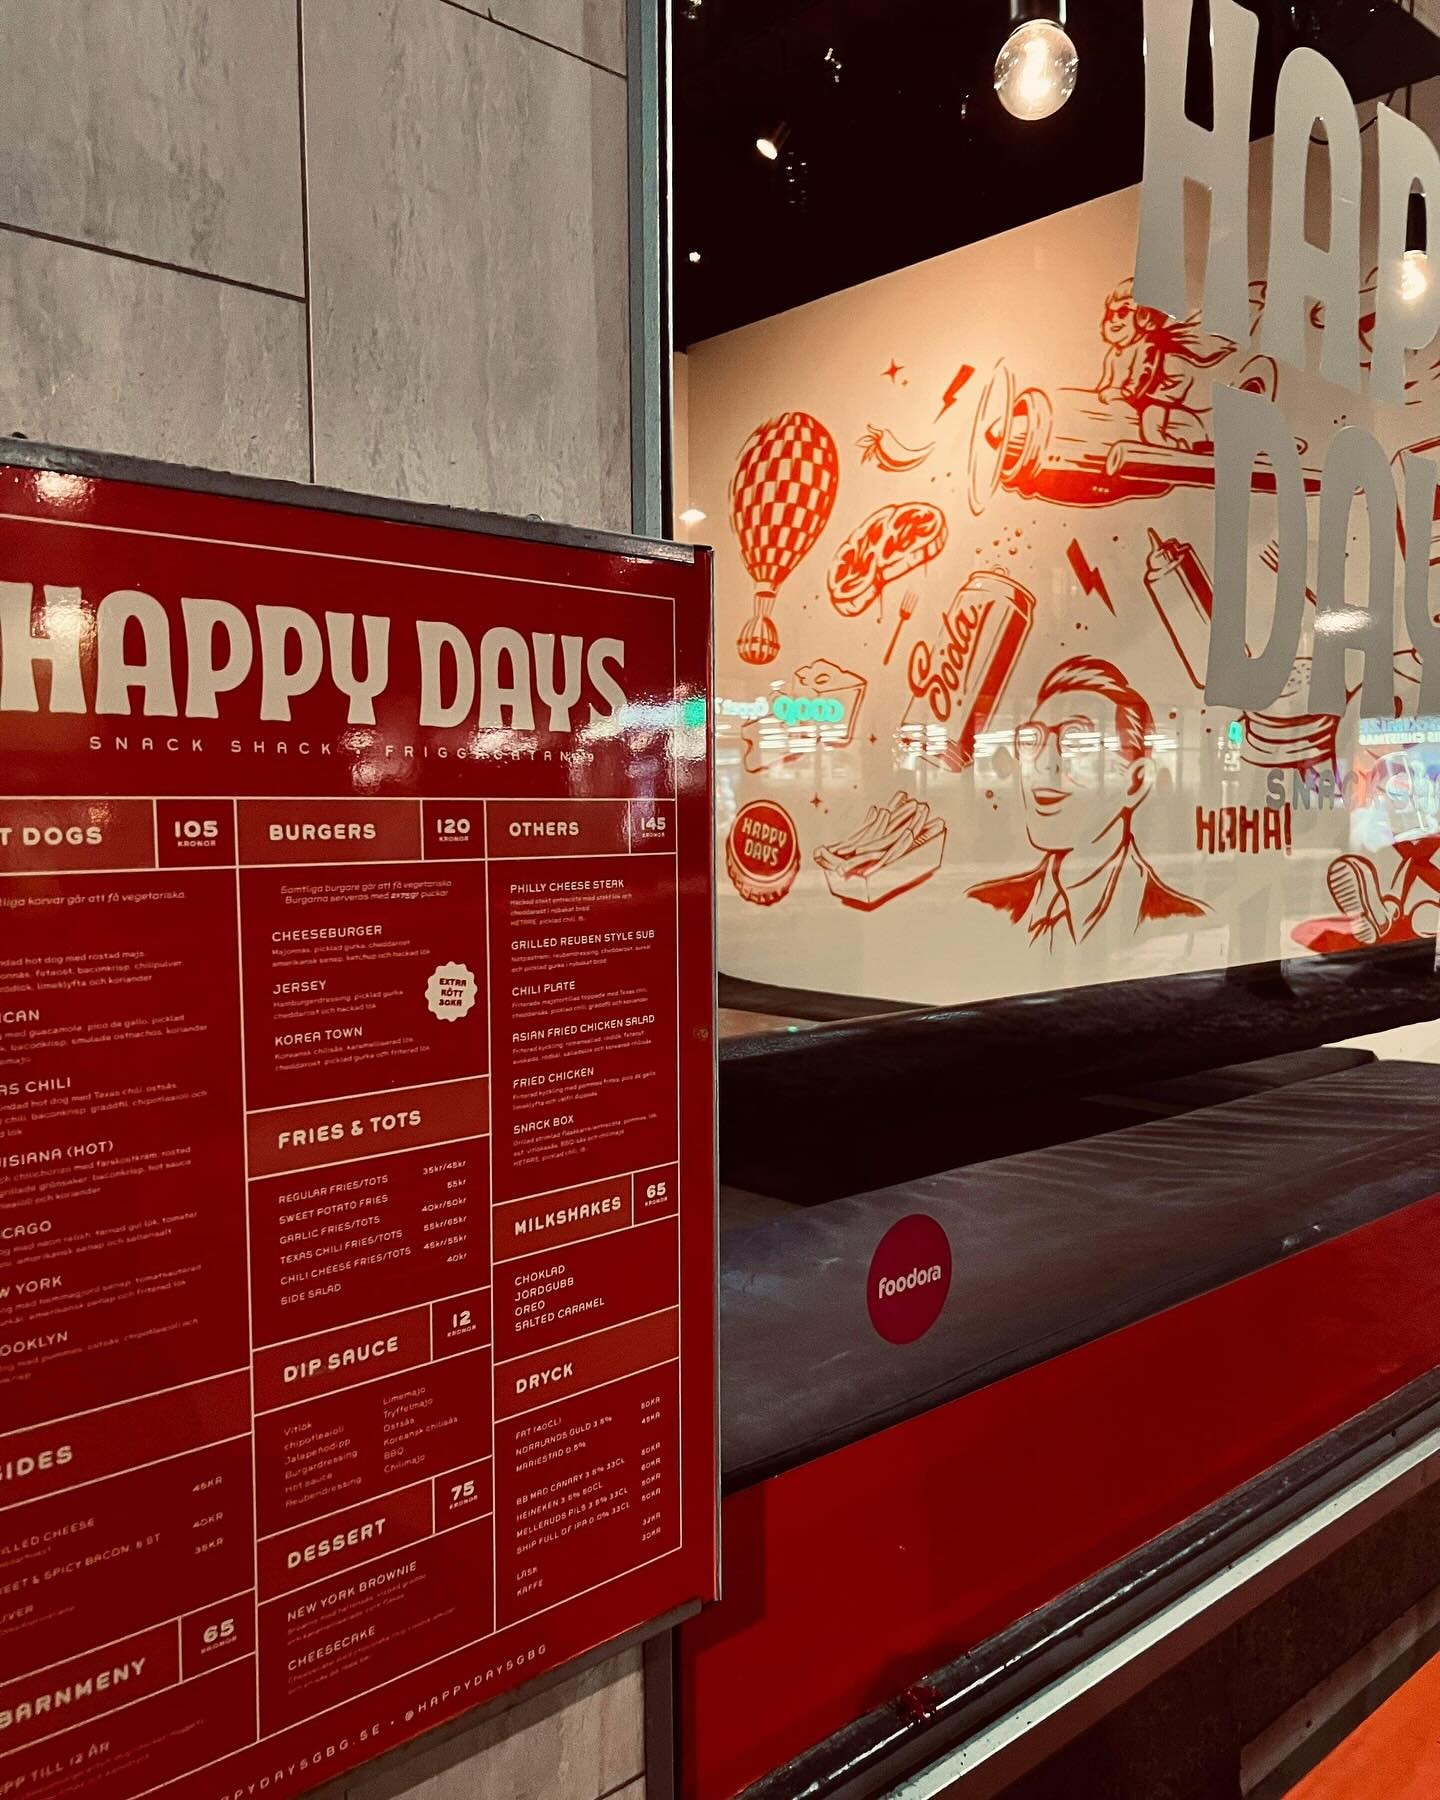 Valfri hamburgare inkl. pommes hos Happy Days i Stampen (4 av 6)